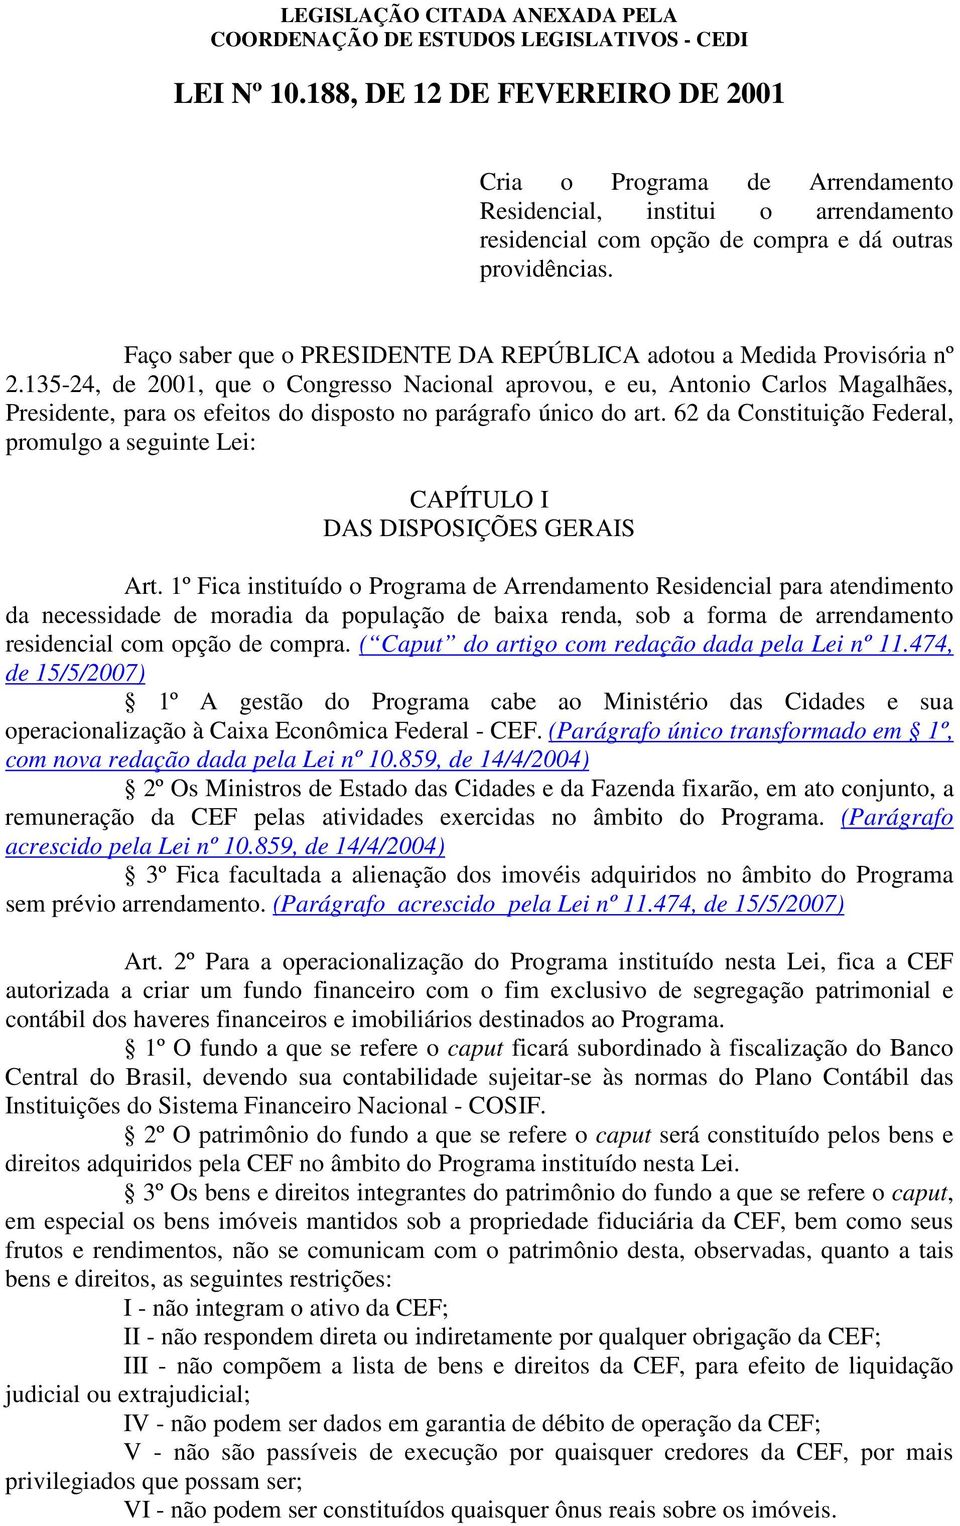 135-24, de 2001, que o Congresso Nacional aprovou, e eu, Antonio Carlos Magalhães, Presidente, para os efeitos do disposto no parágrafo único do art.